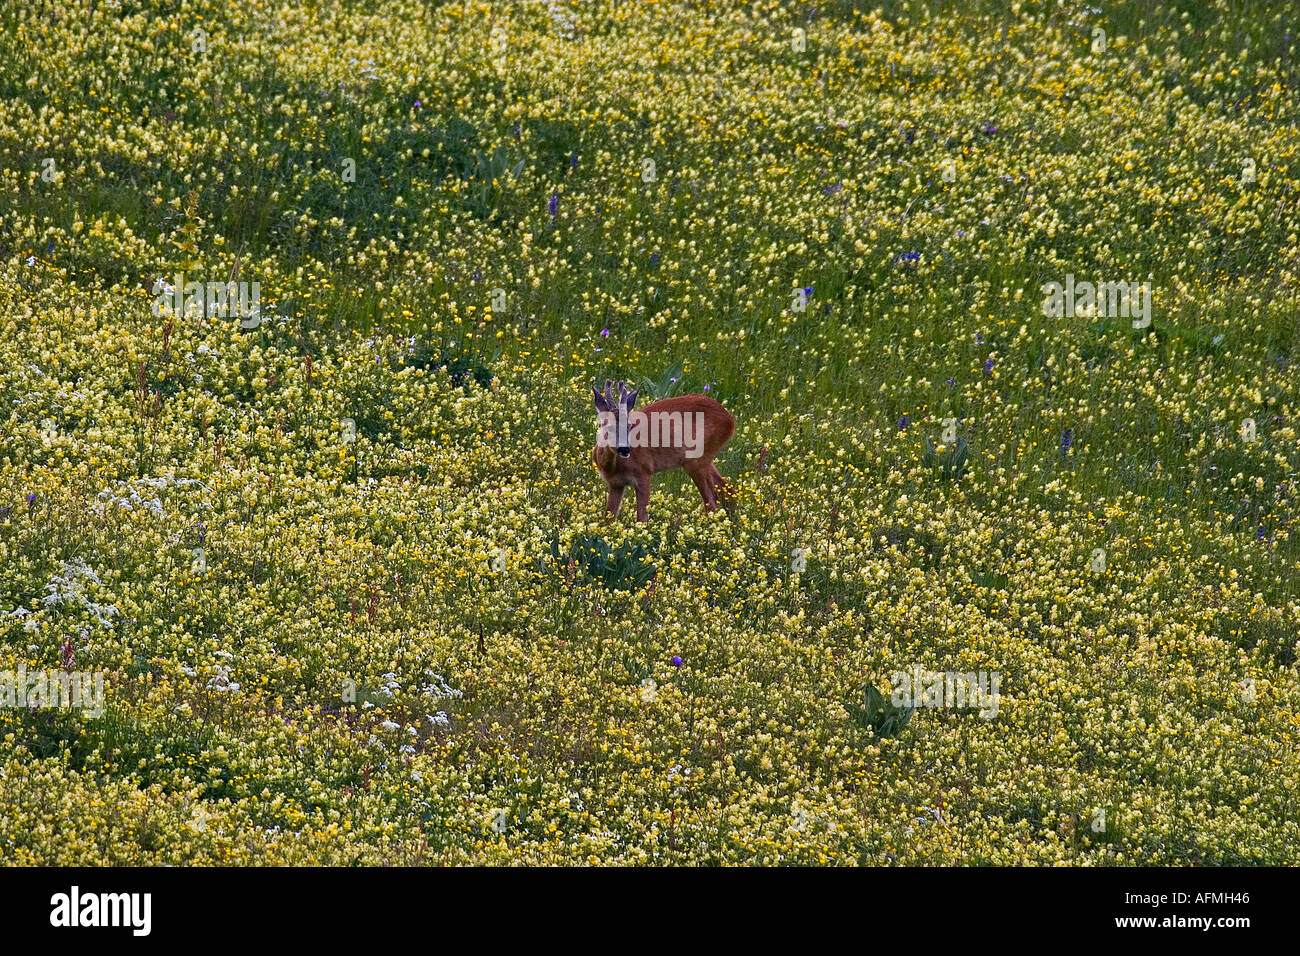 Le Chevreuil Capreolus capreolus mâle dans une prairie de fleurs jaunes capriolo Banque D'Images